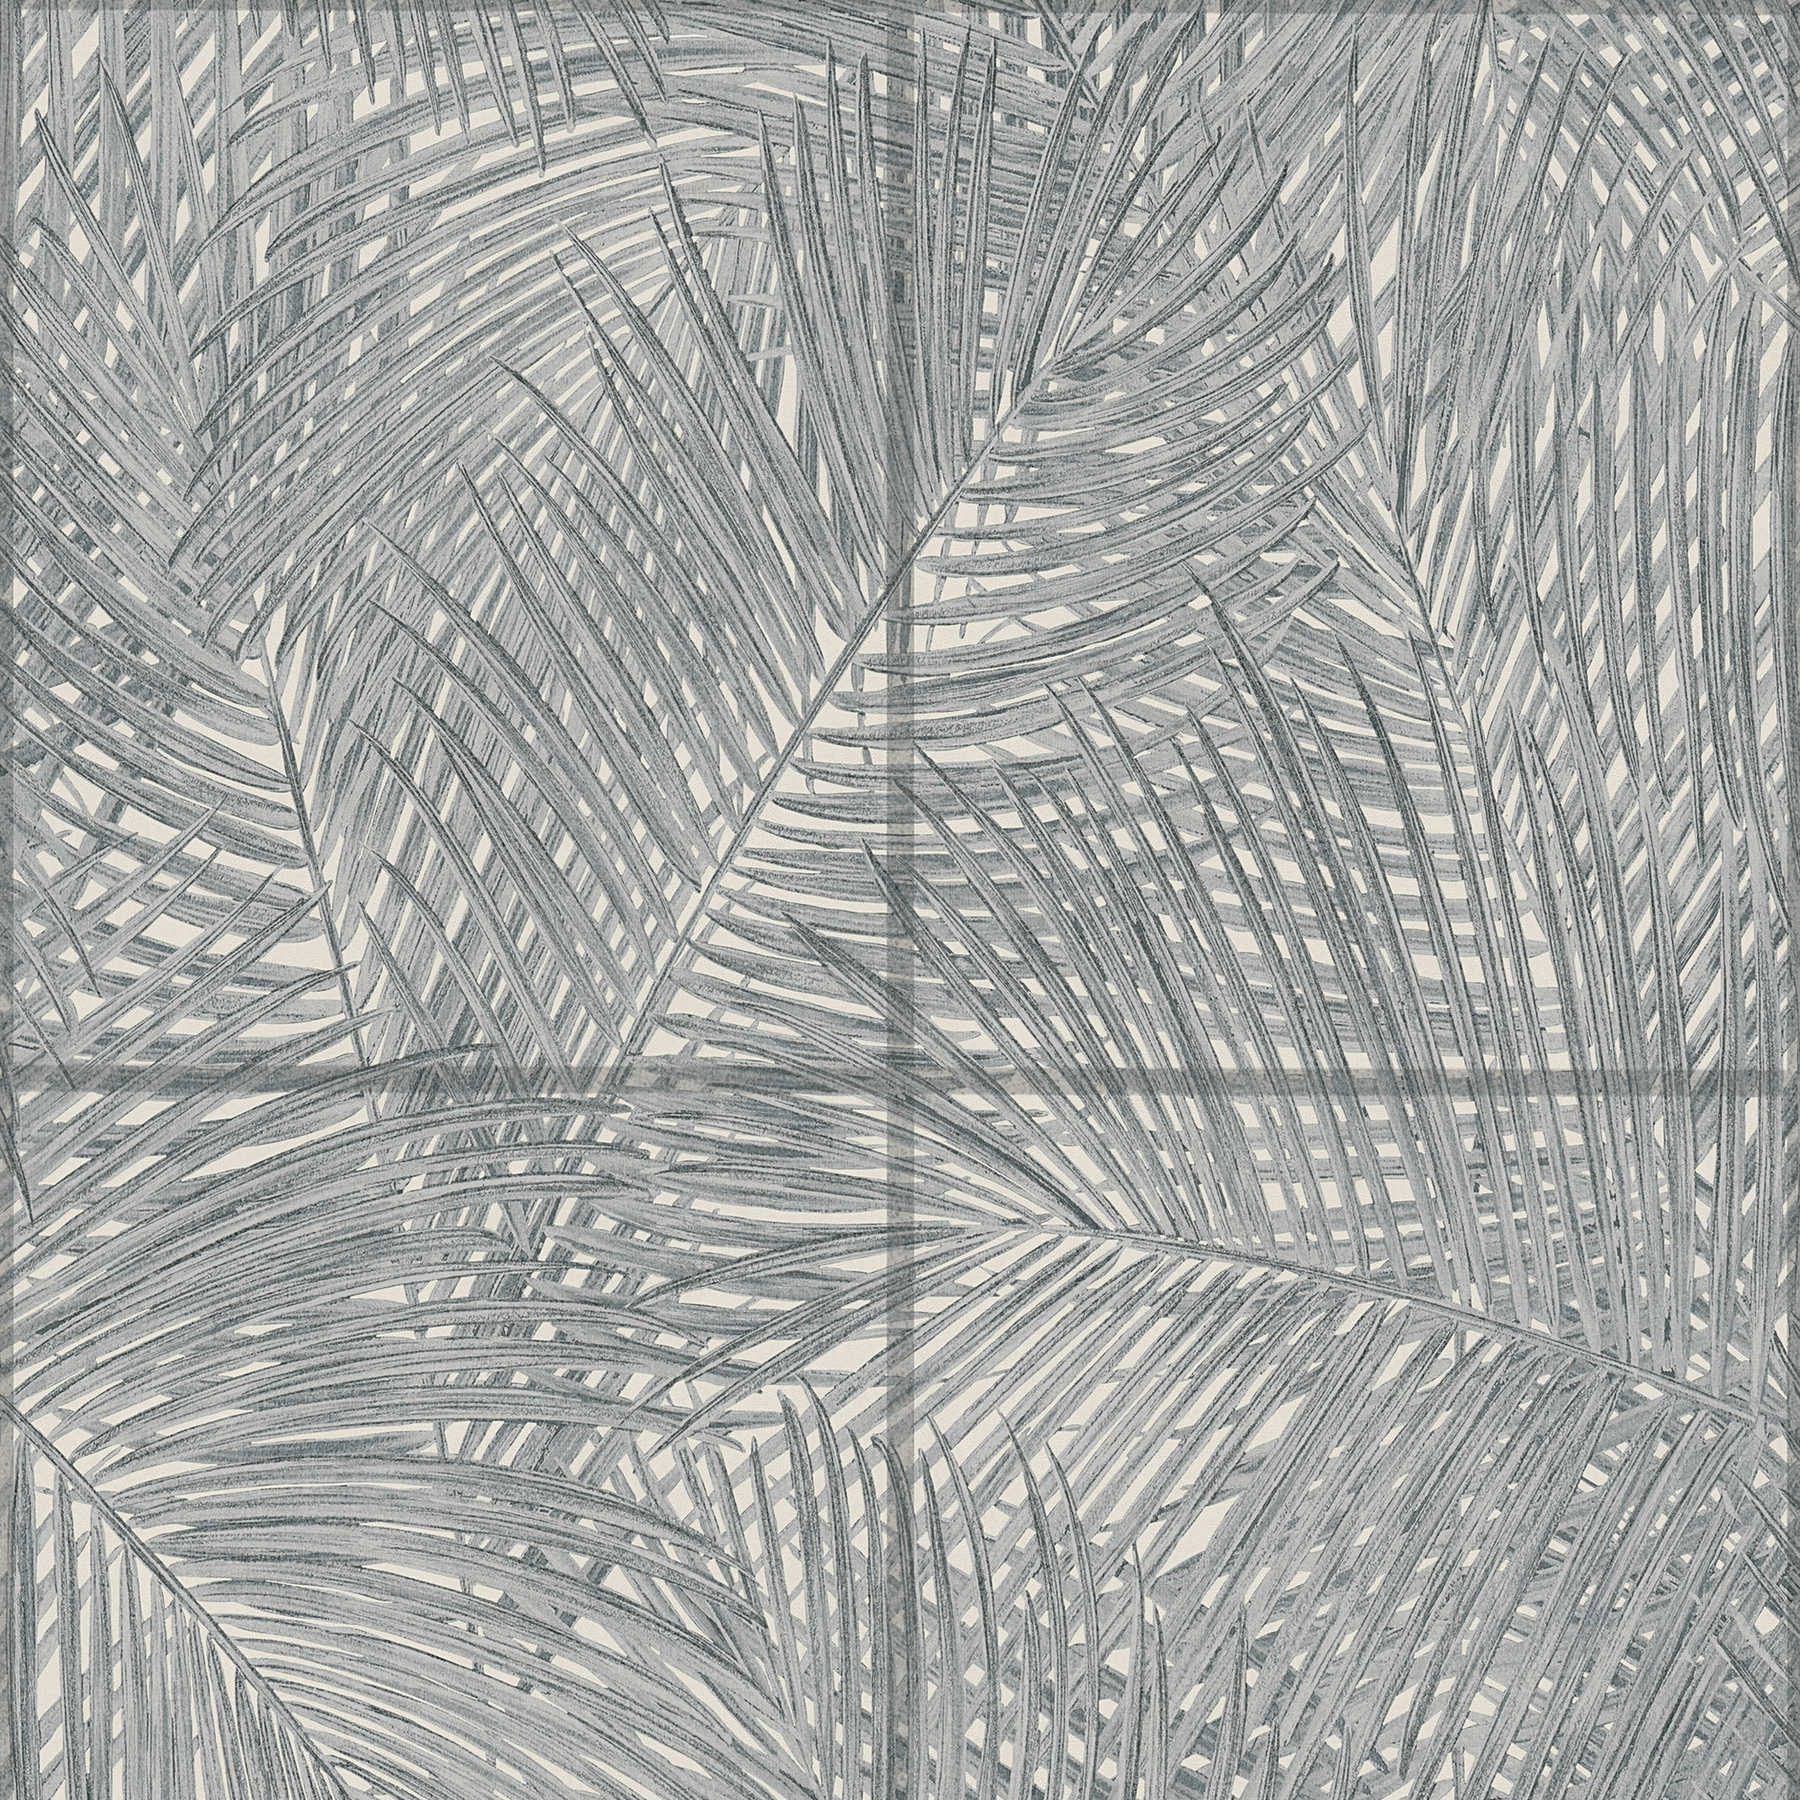 Wallpaper with tile design & leaf motif - black, white, grey
